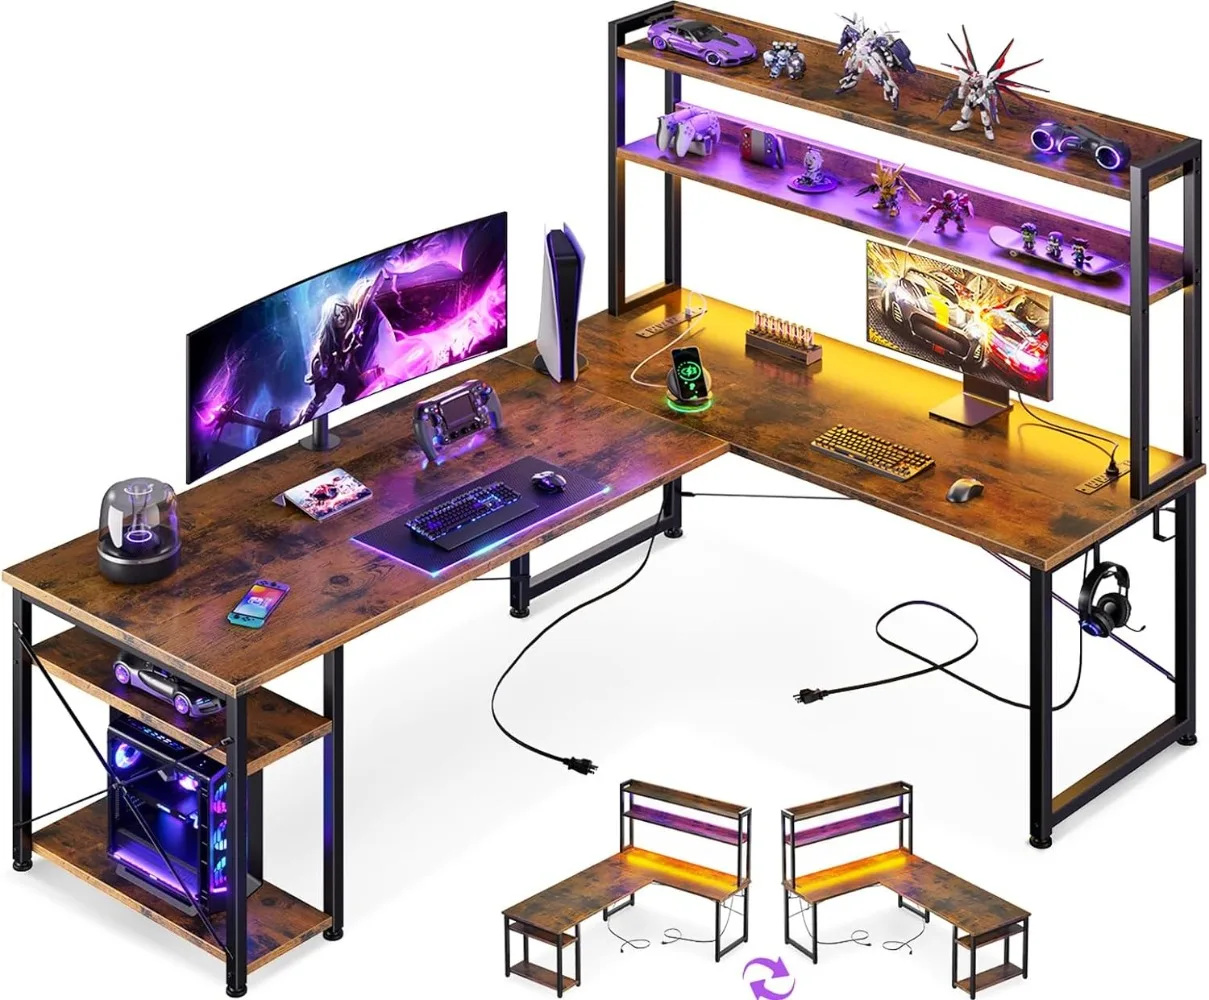 

Игровой стол L-образной формы с выемкой, розетками питания, светодиодной лентой и подставкой для монитора, двусторонний компьютерный стол 66 дюймов с полками для хранения